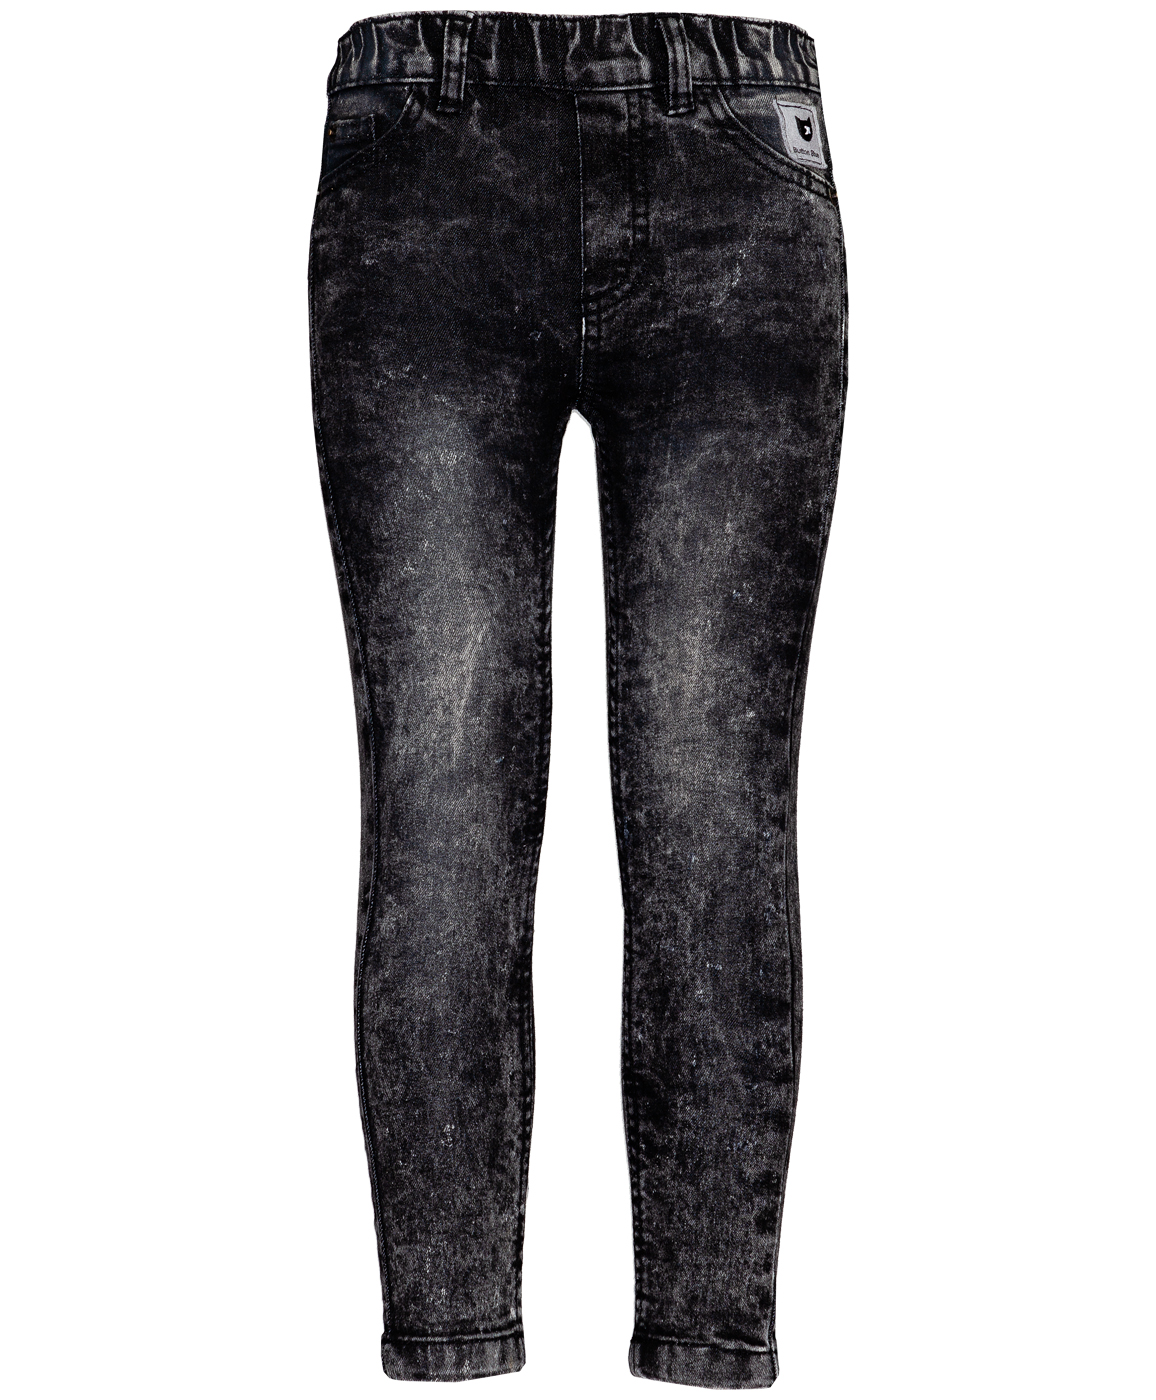 Черные джинсы Slim Fit на резинке Button Blue 219BBGC6304D300, размер 98, цвет черный - фото 1